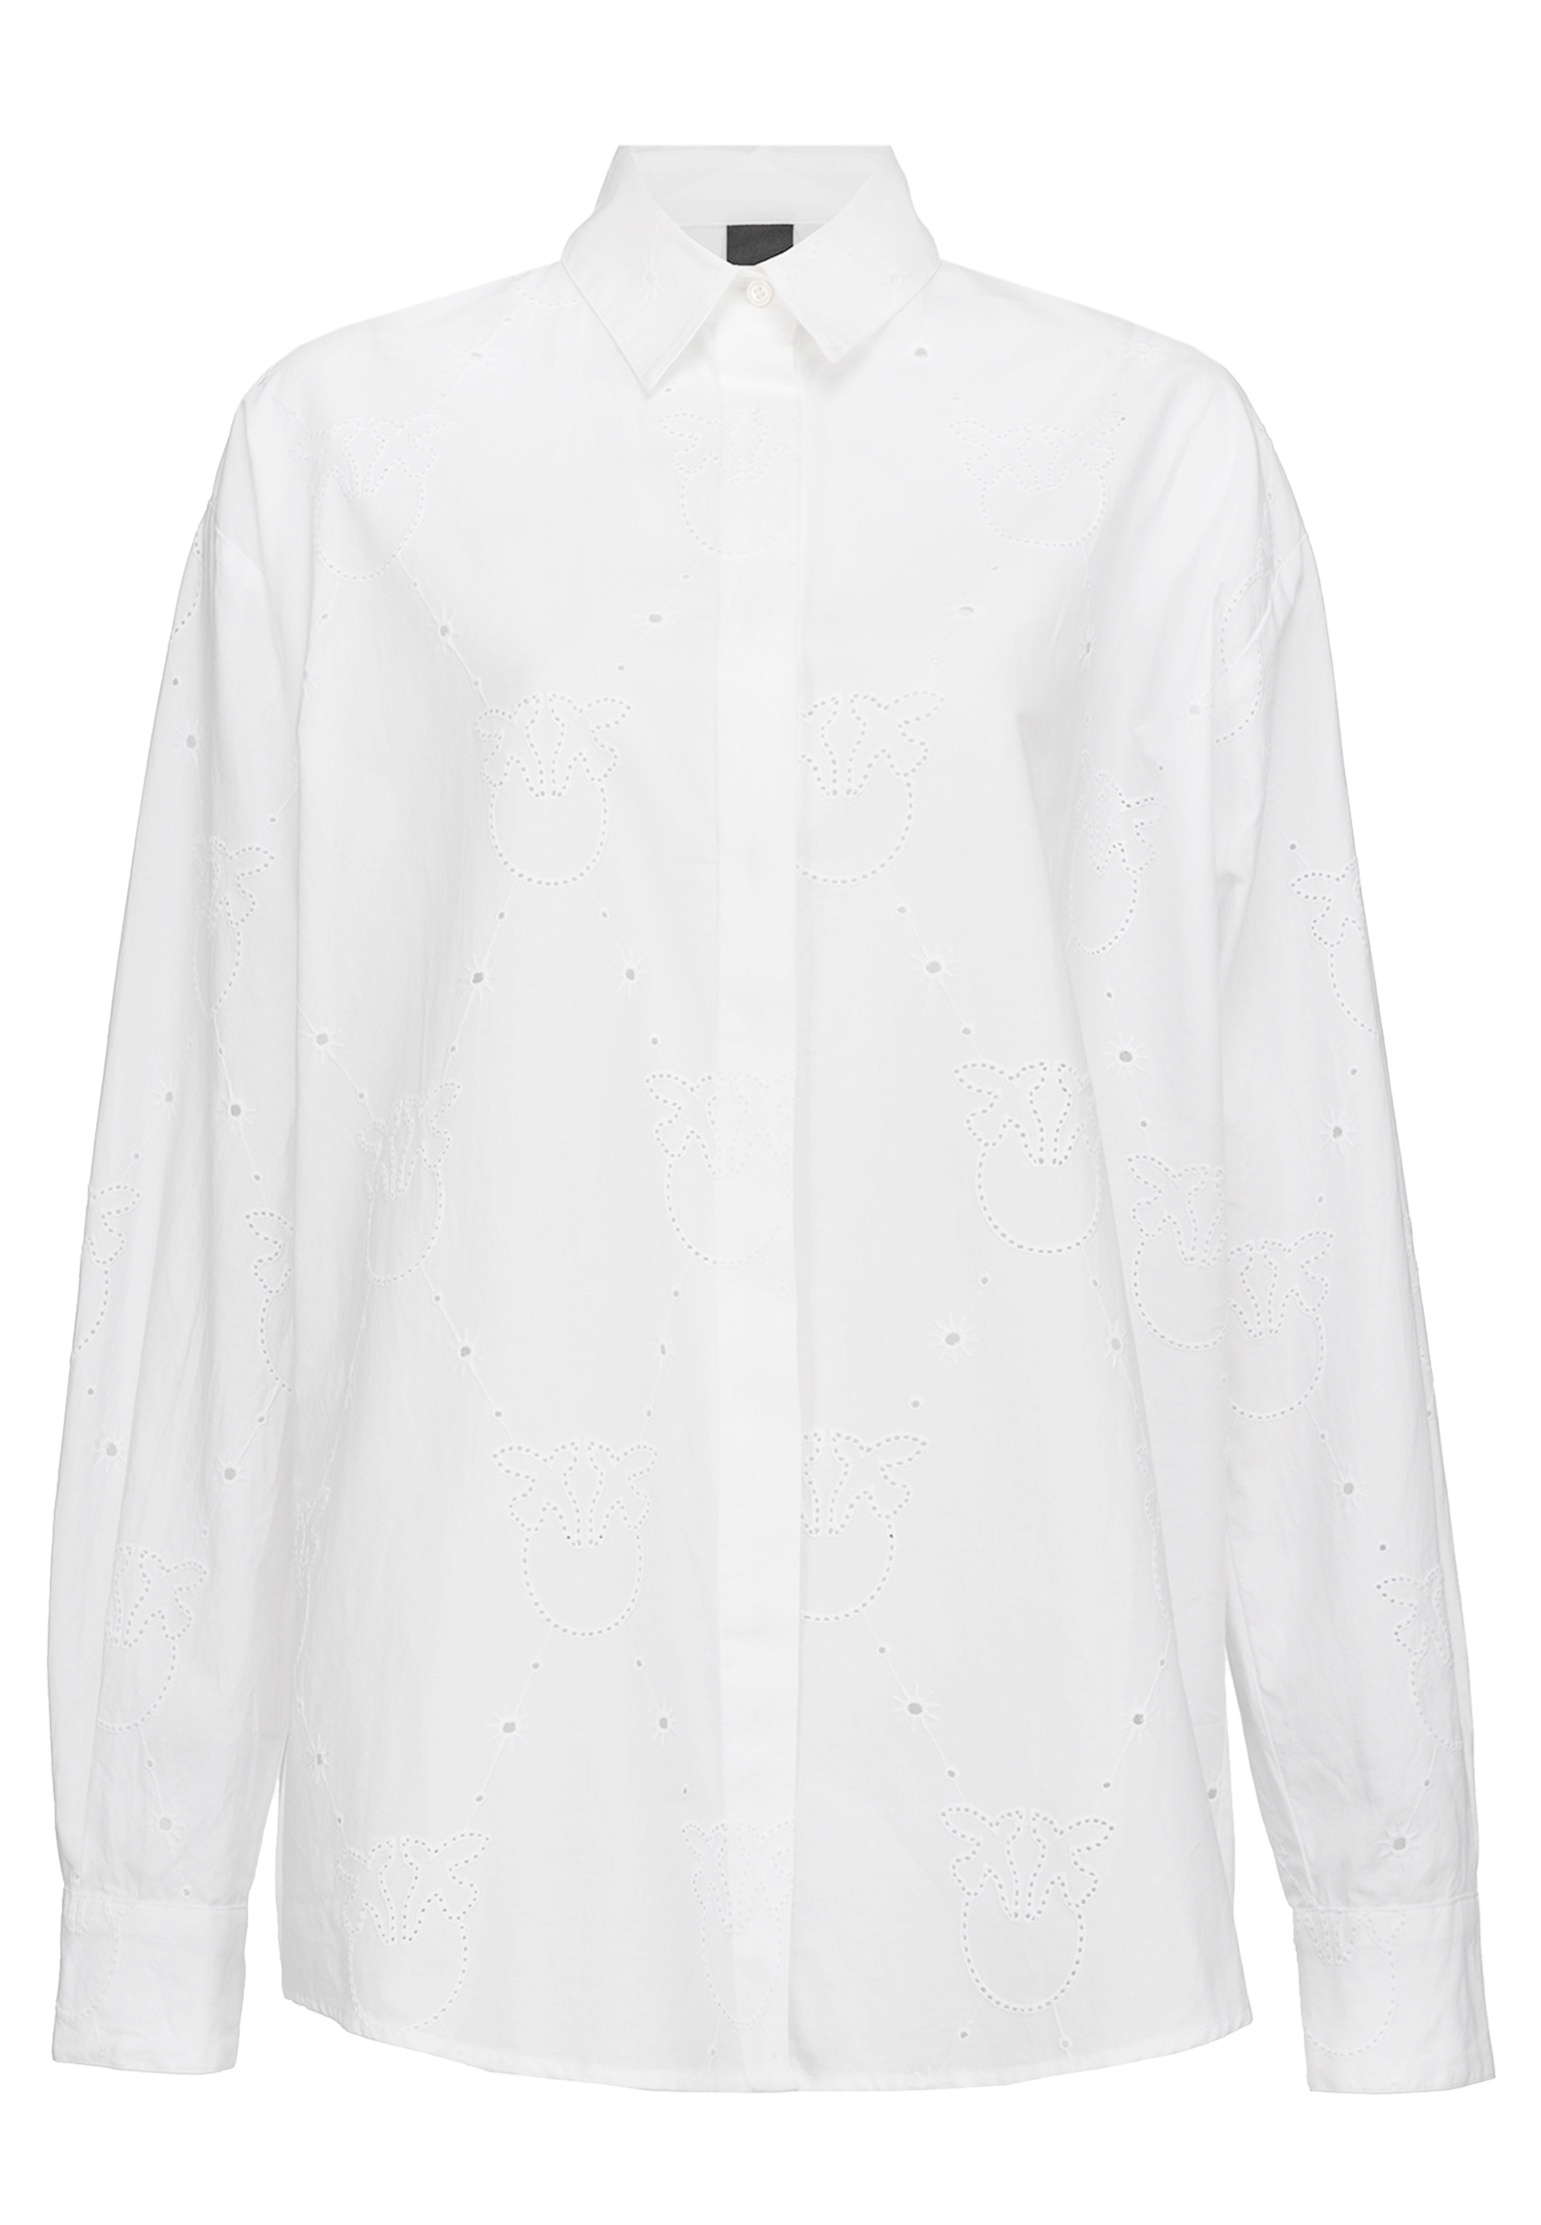 Рубашка женская Pinko 141006 белая L